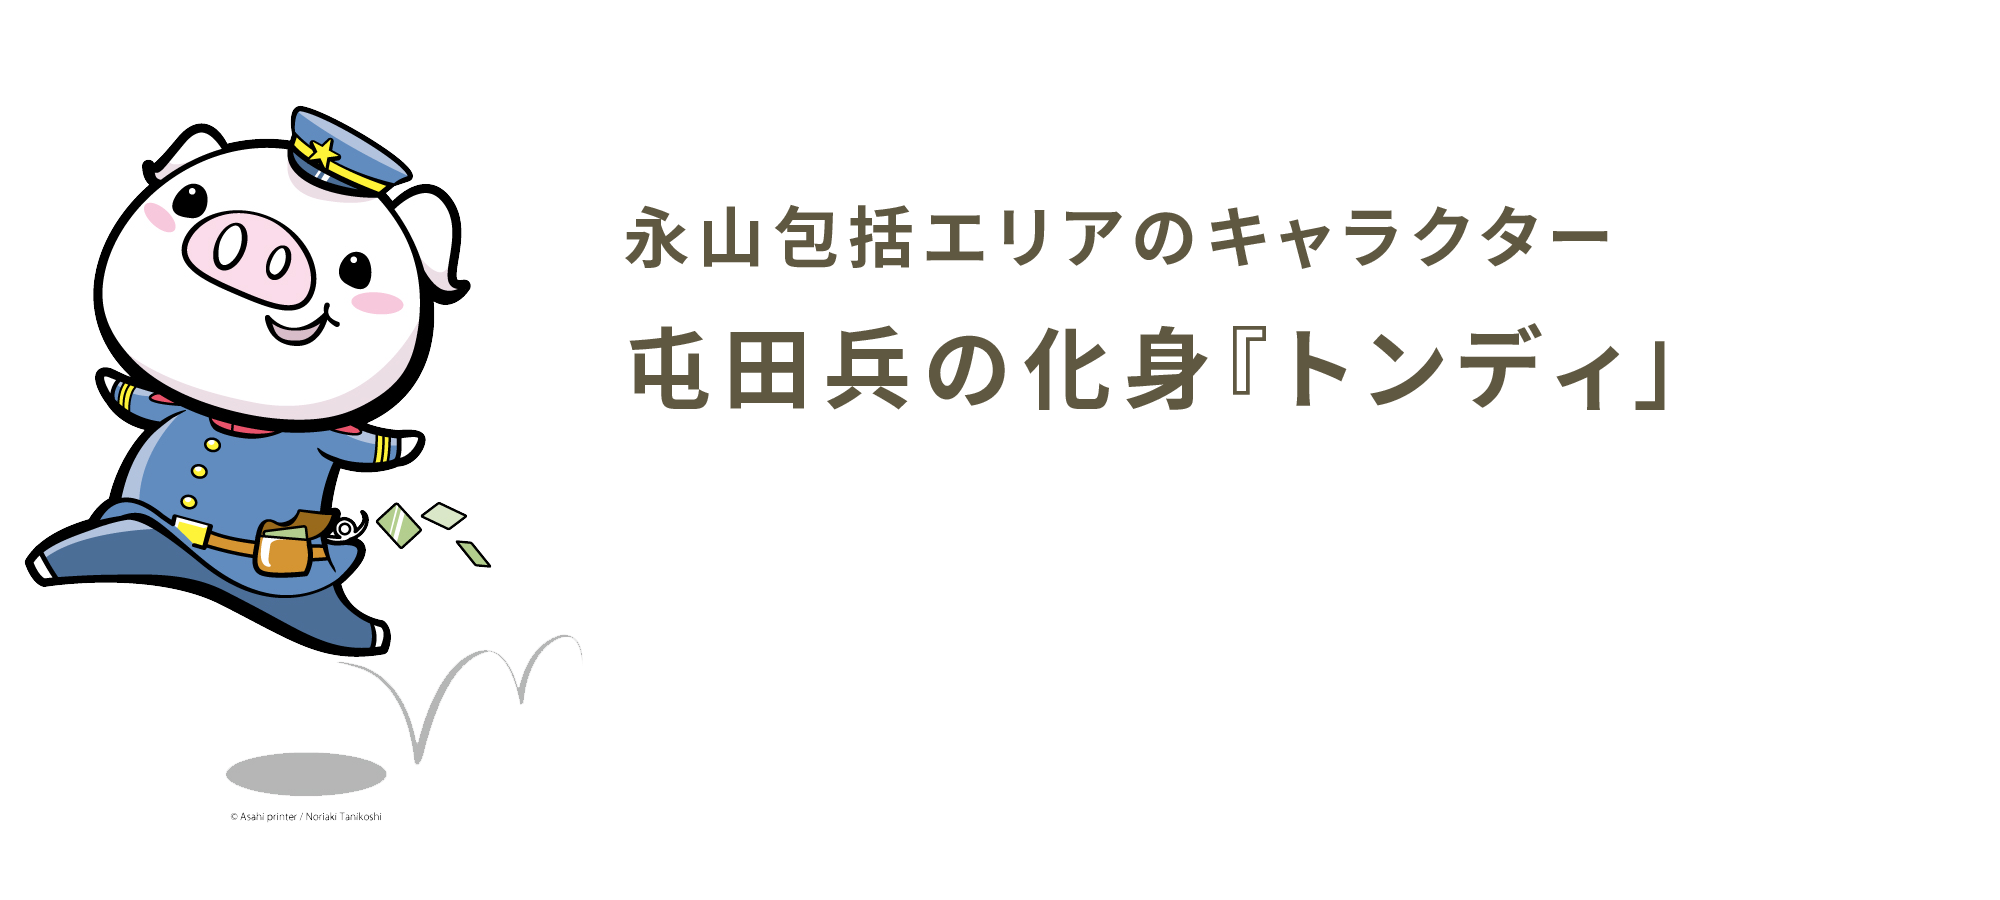 永山包括エリアマスコットキャラクター「トンディ」のデザインをした「こびんDesign」のサイトへ